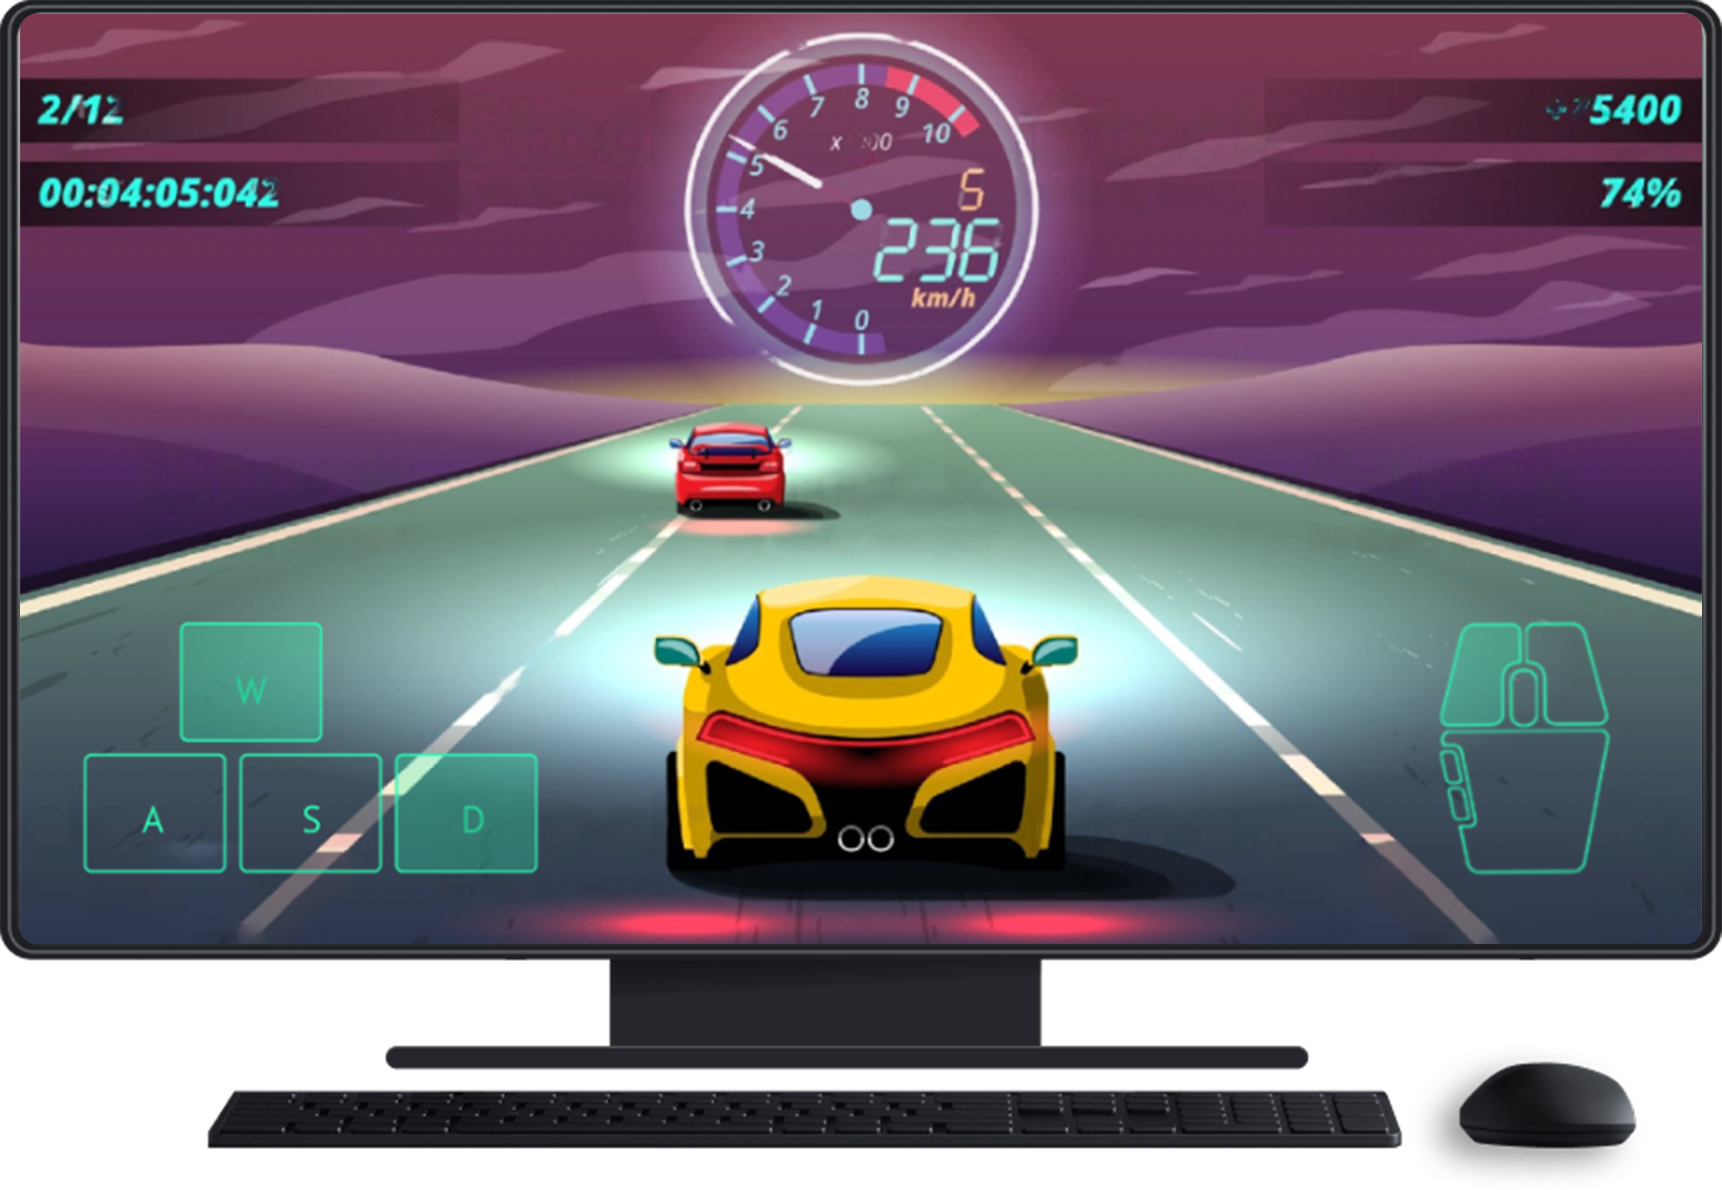 Computador desktop com teclado e mouse. O jogo está na tela, mostrando entradas na tela touchscreen para controle de direção e mouse.